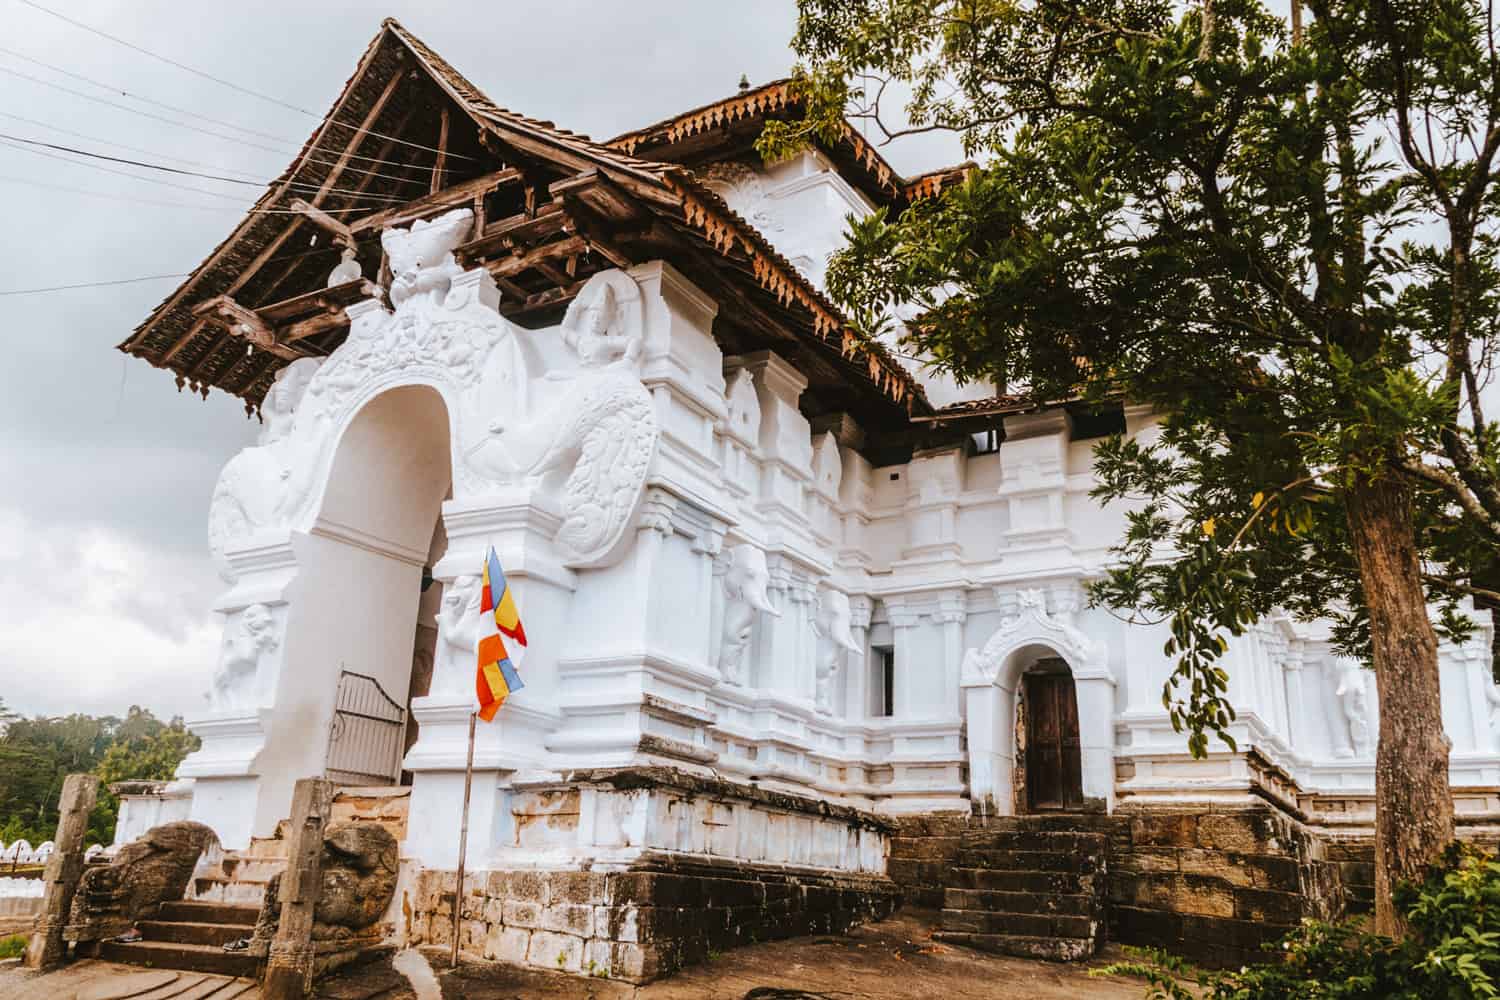 Lankathilaka temple